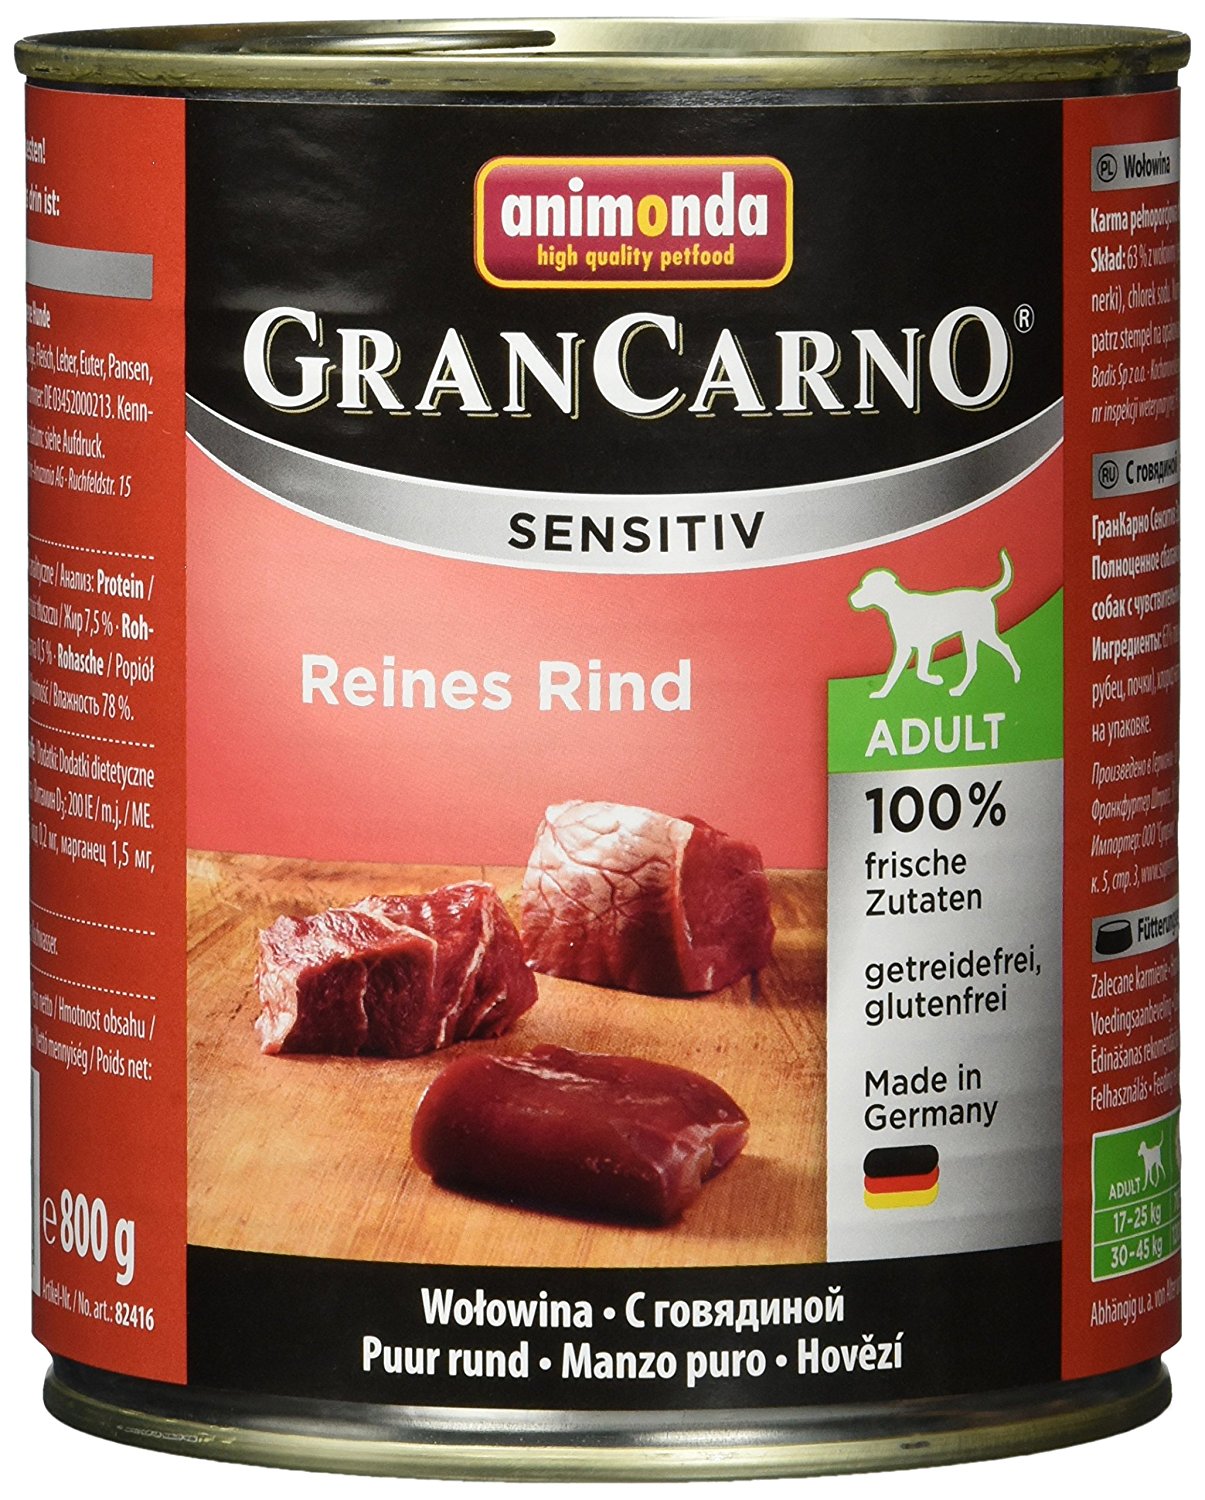 Animonda Gran Carno Hundefutter Sensitive Adult Reines Rind, 6er Pack